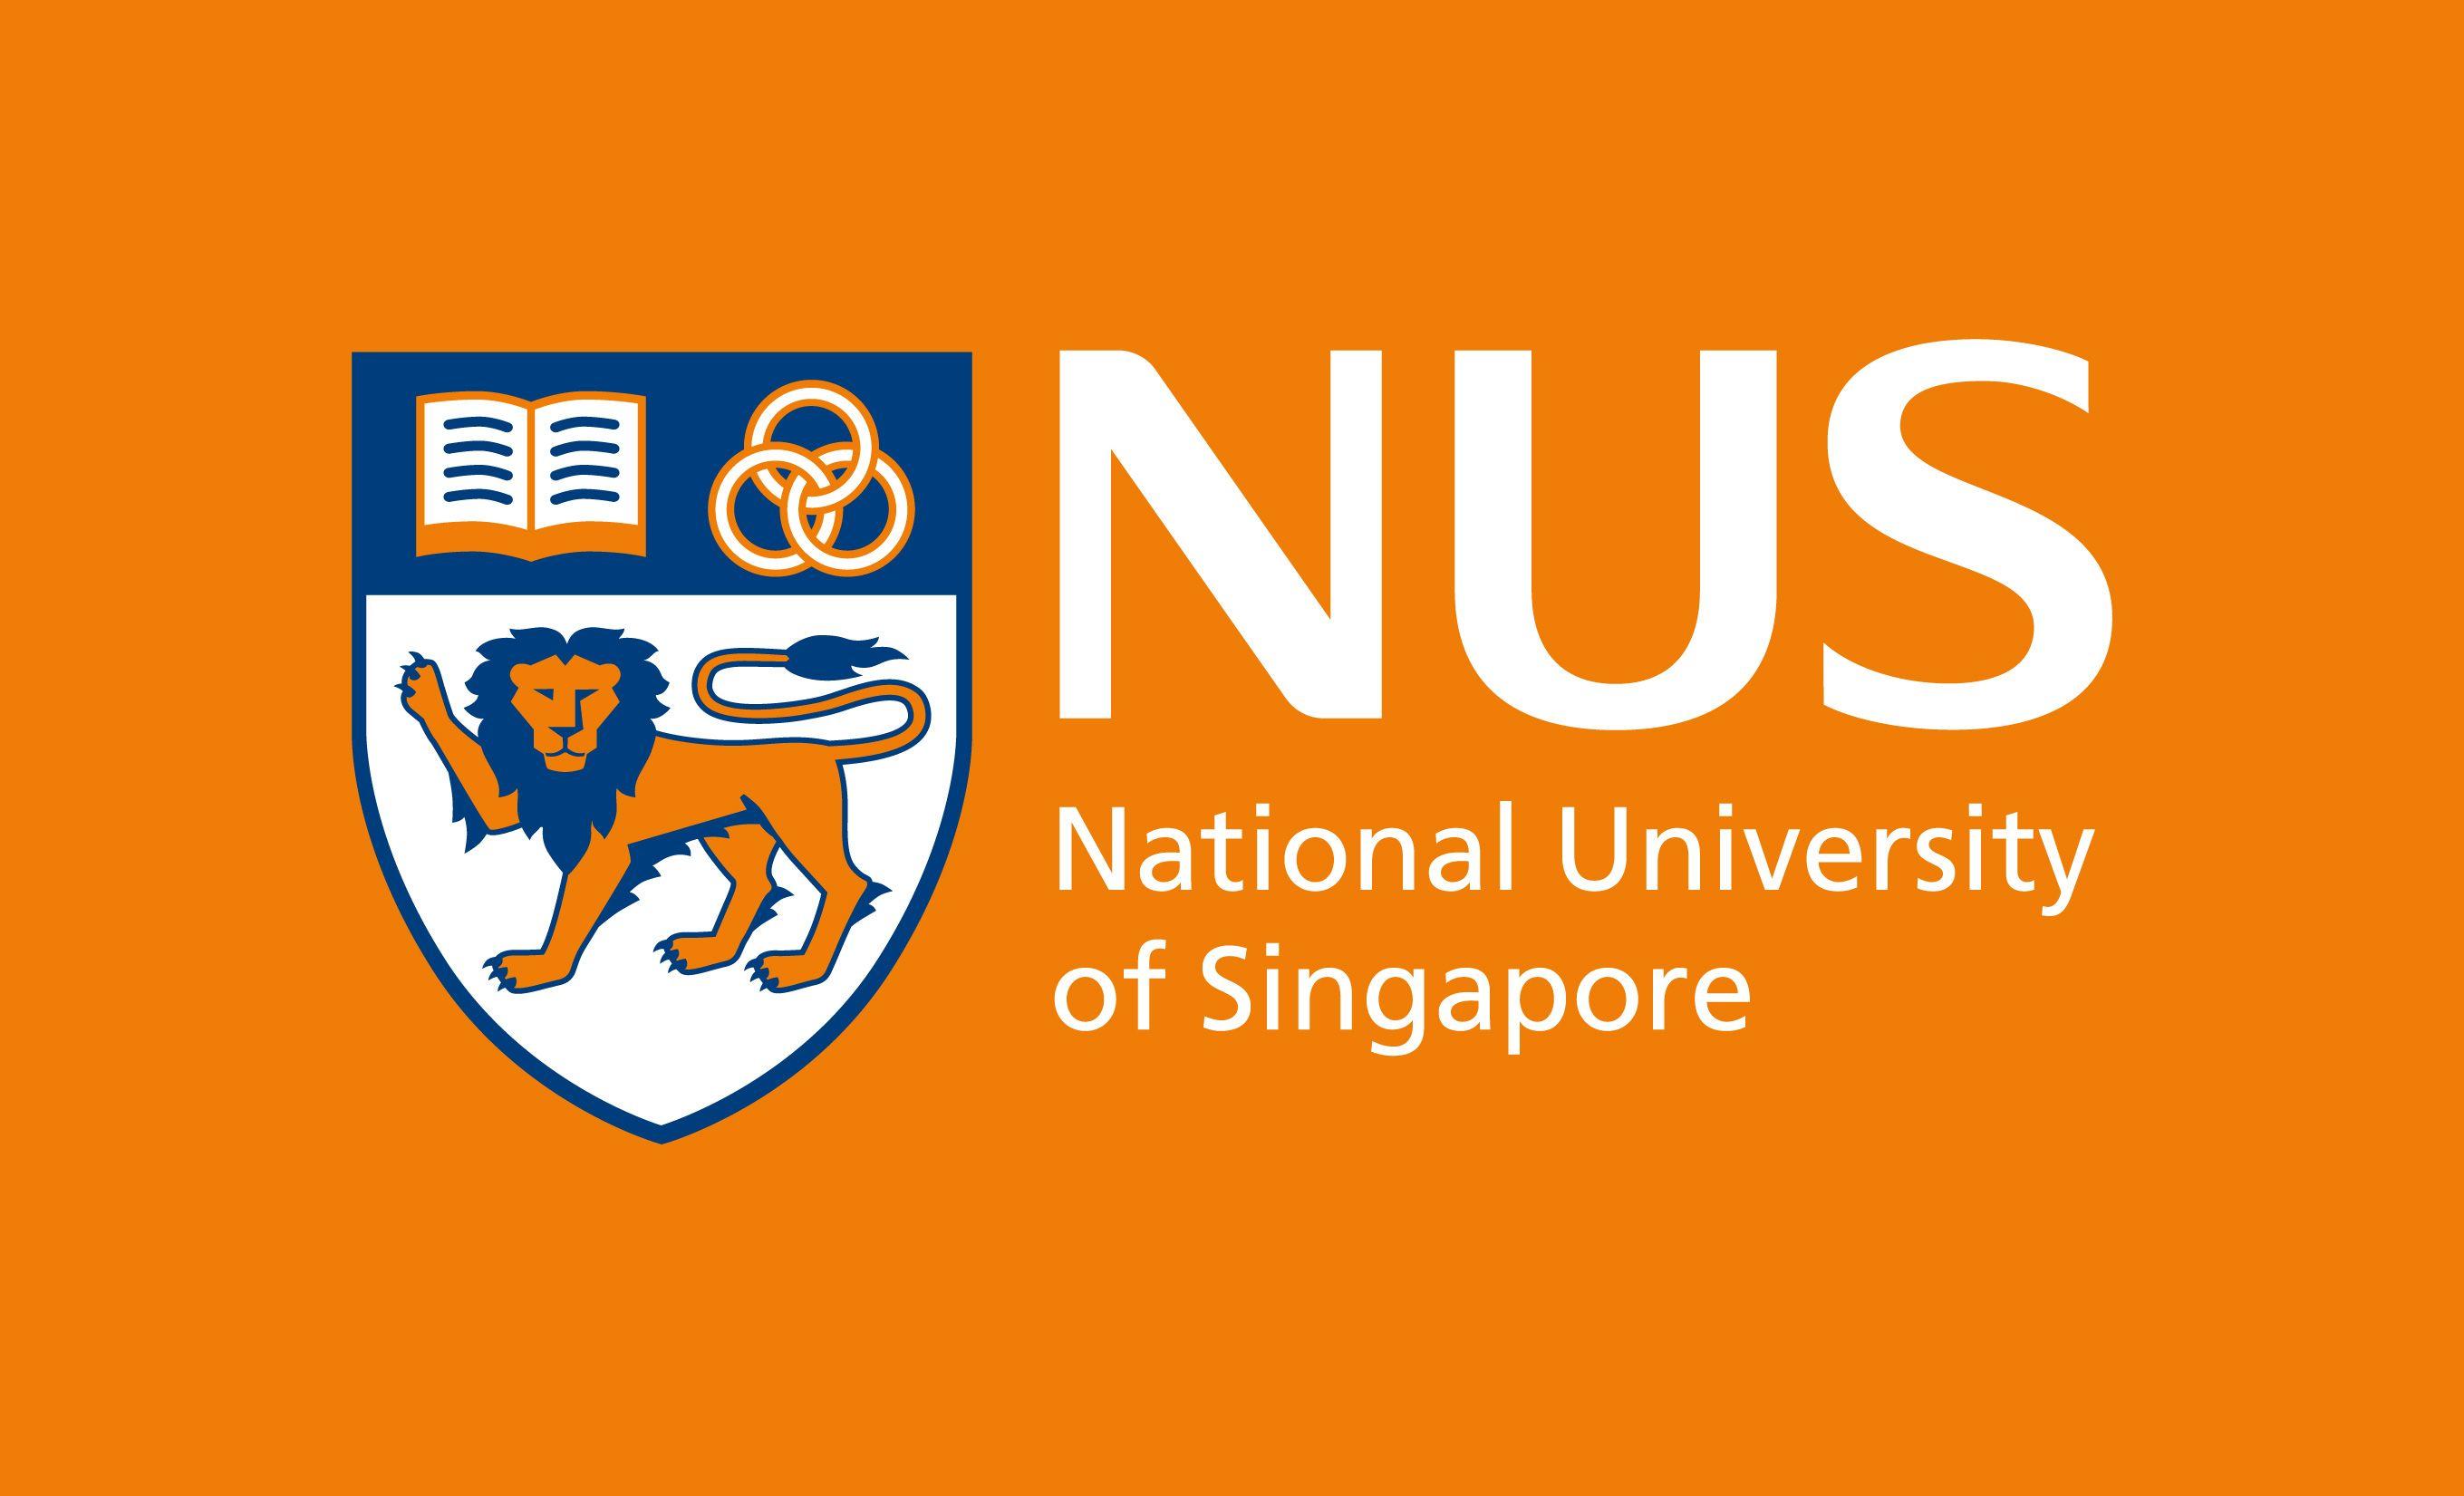 NUS Logo - NUS - National University of Singapore Identity